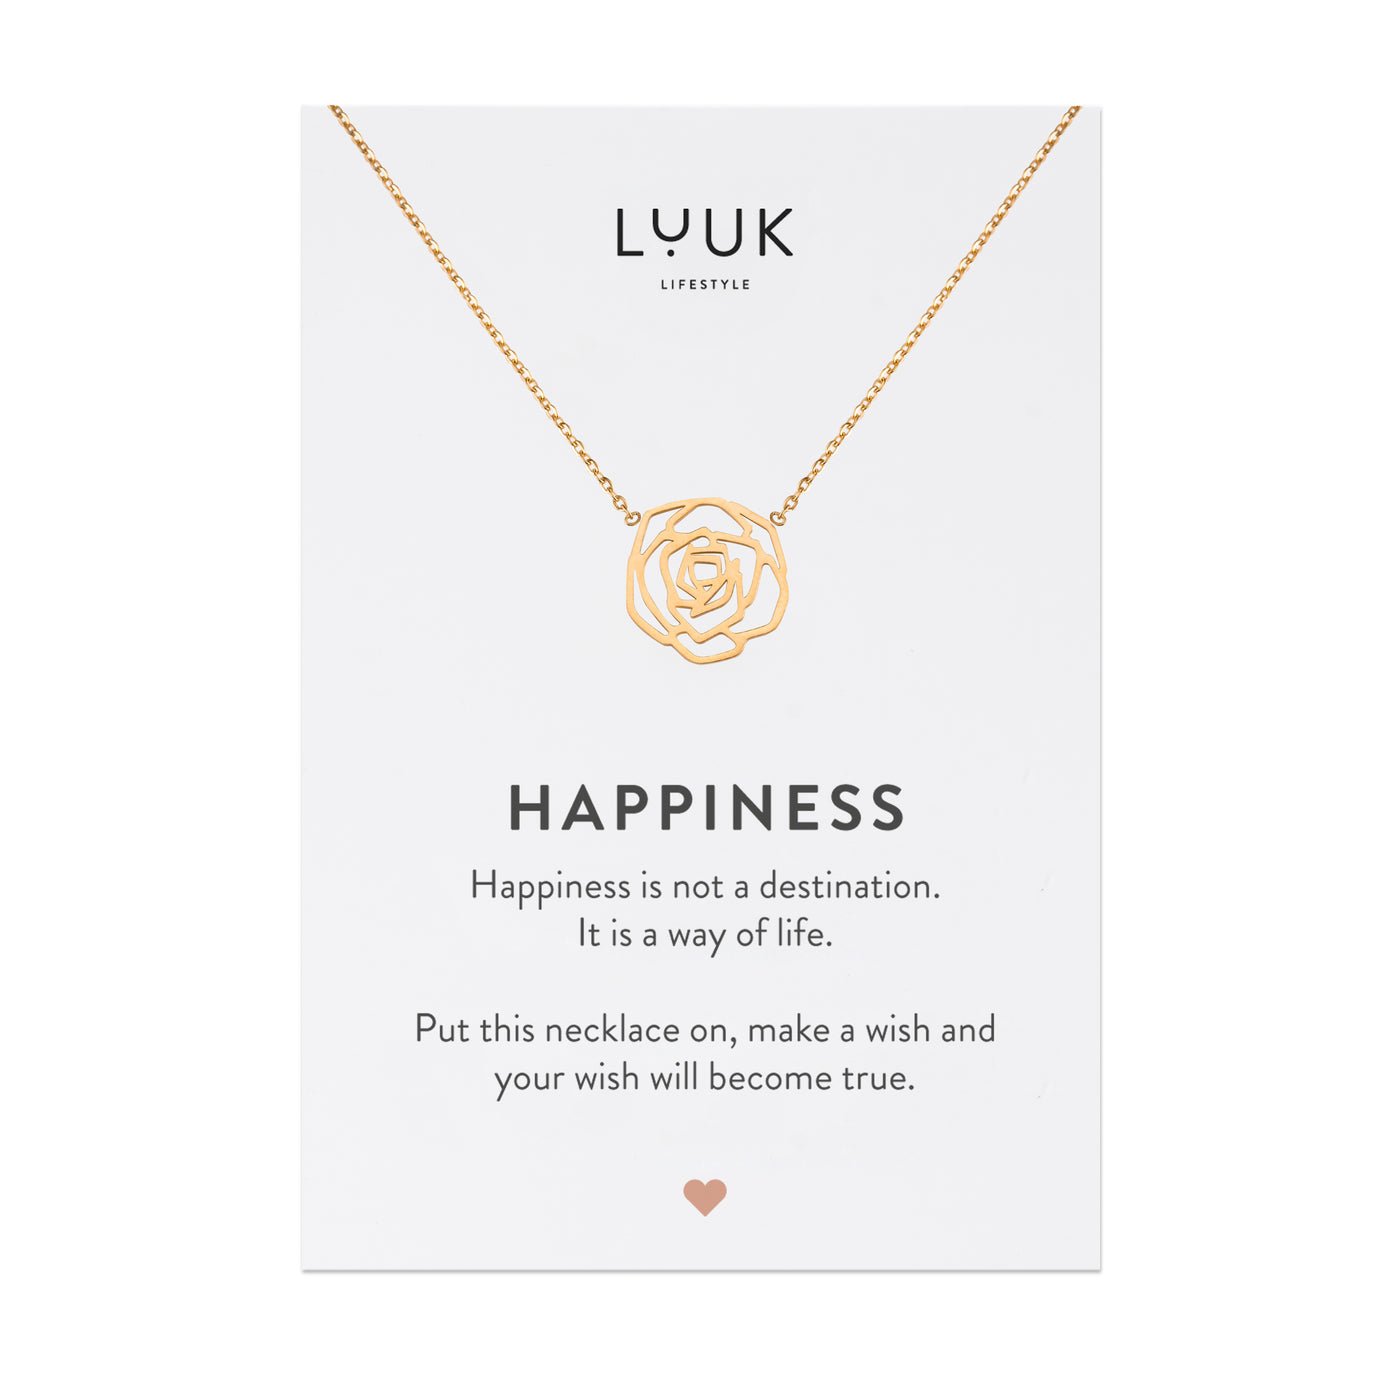 Gold Kette mit Rosenblüten Anhänger aus Edelstahl auf Happiness Spruchkarte von der Brand Luuk Lifestyle